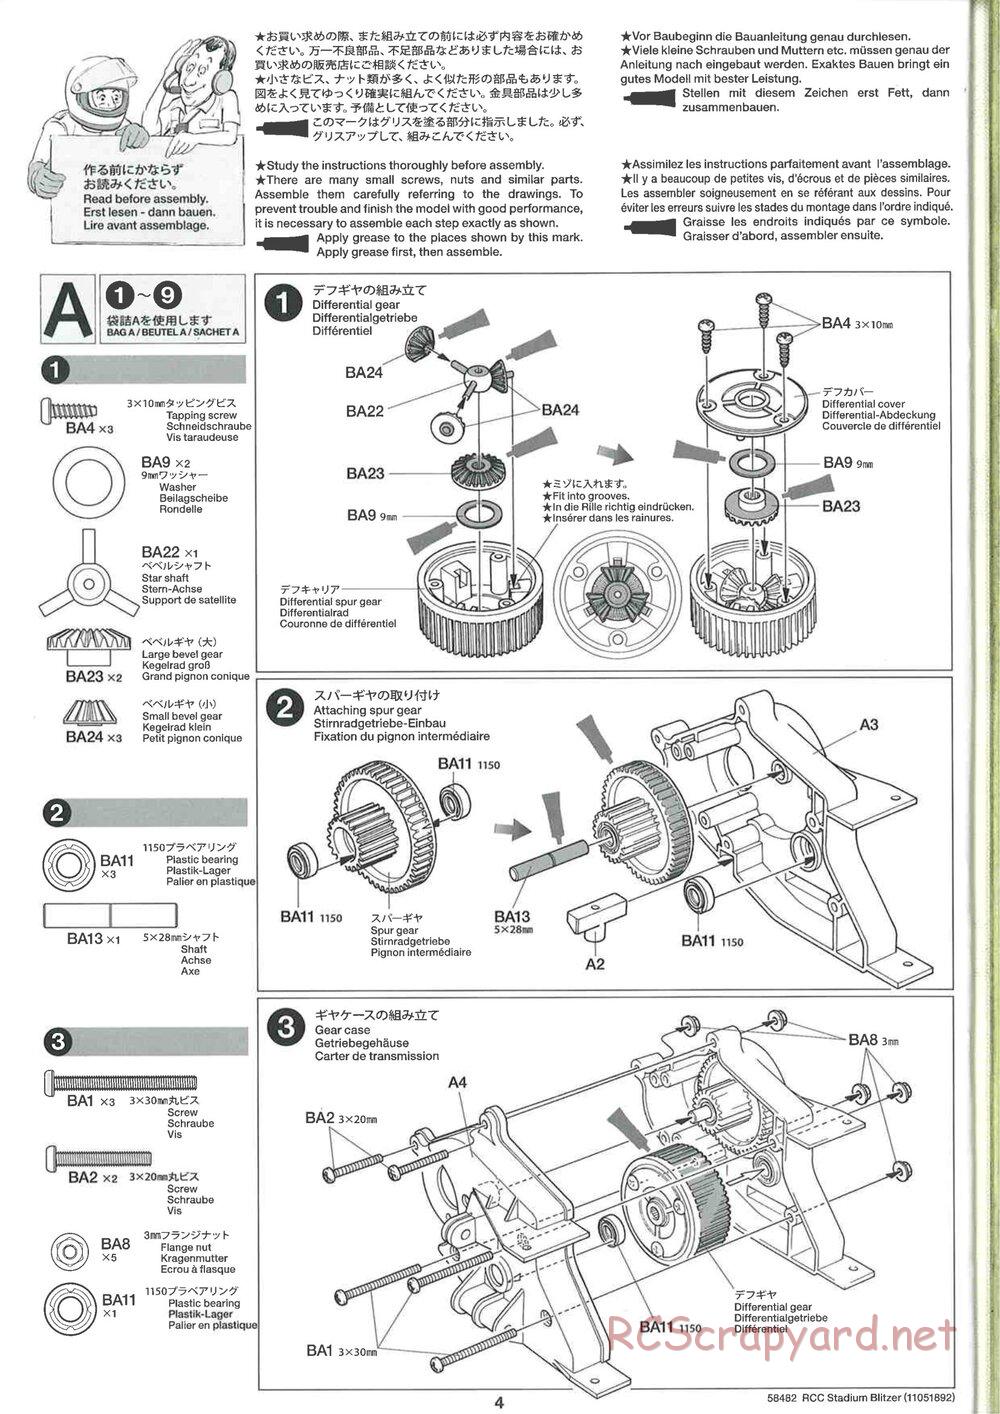 Tamiya - Stadium Blitzer 2010 - FAL Chassis - Manual - Page 4